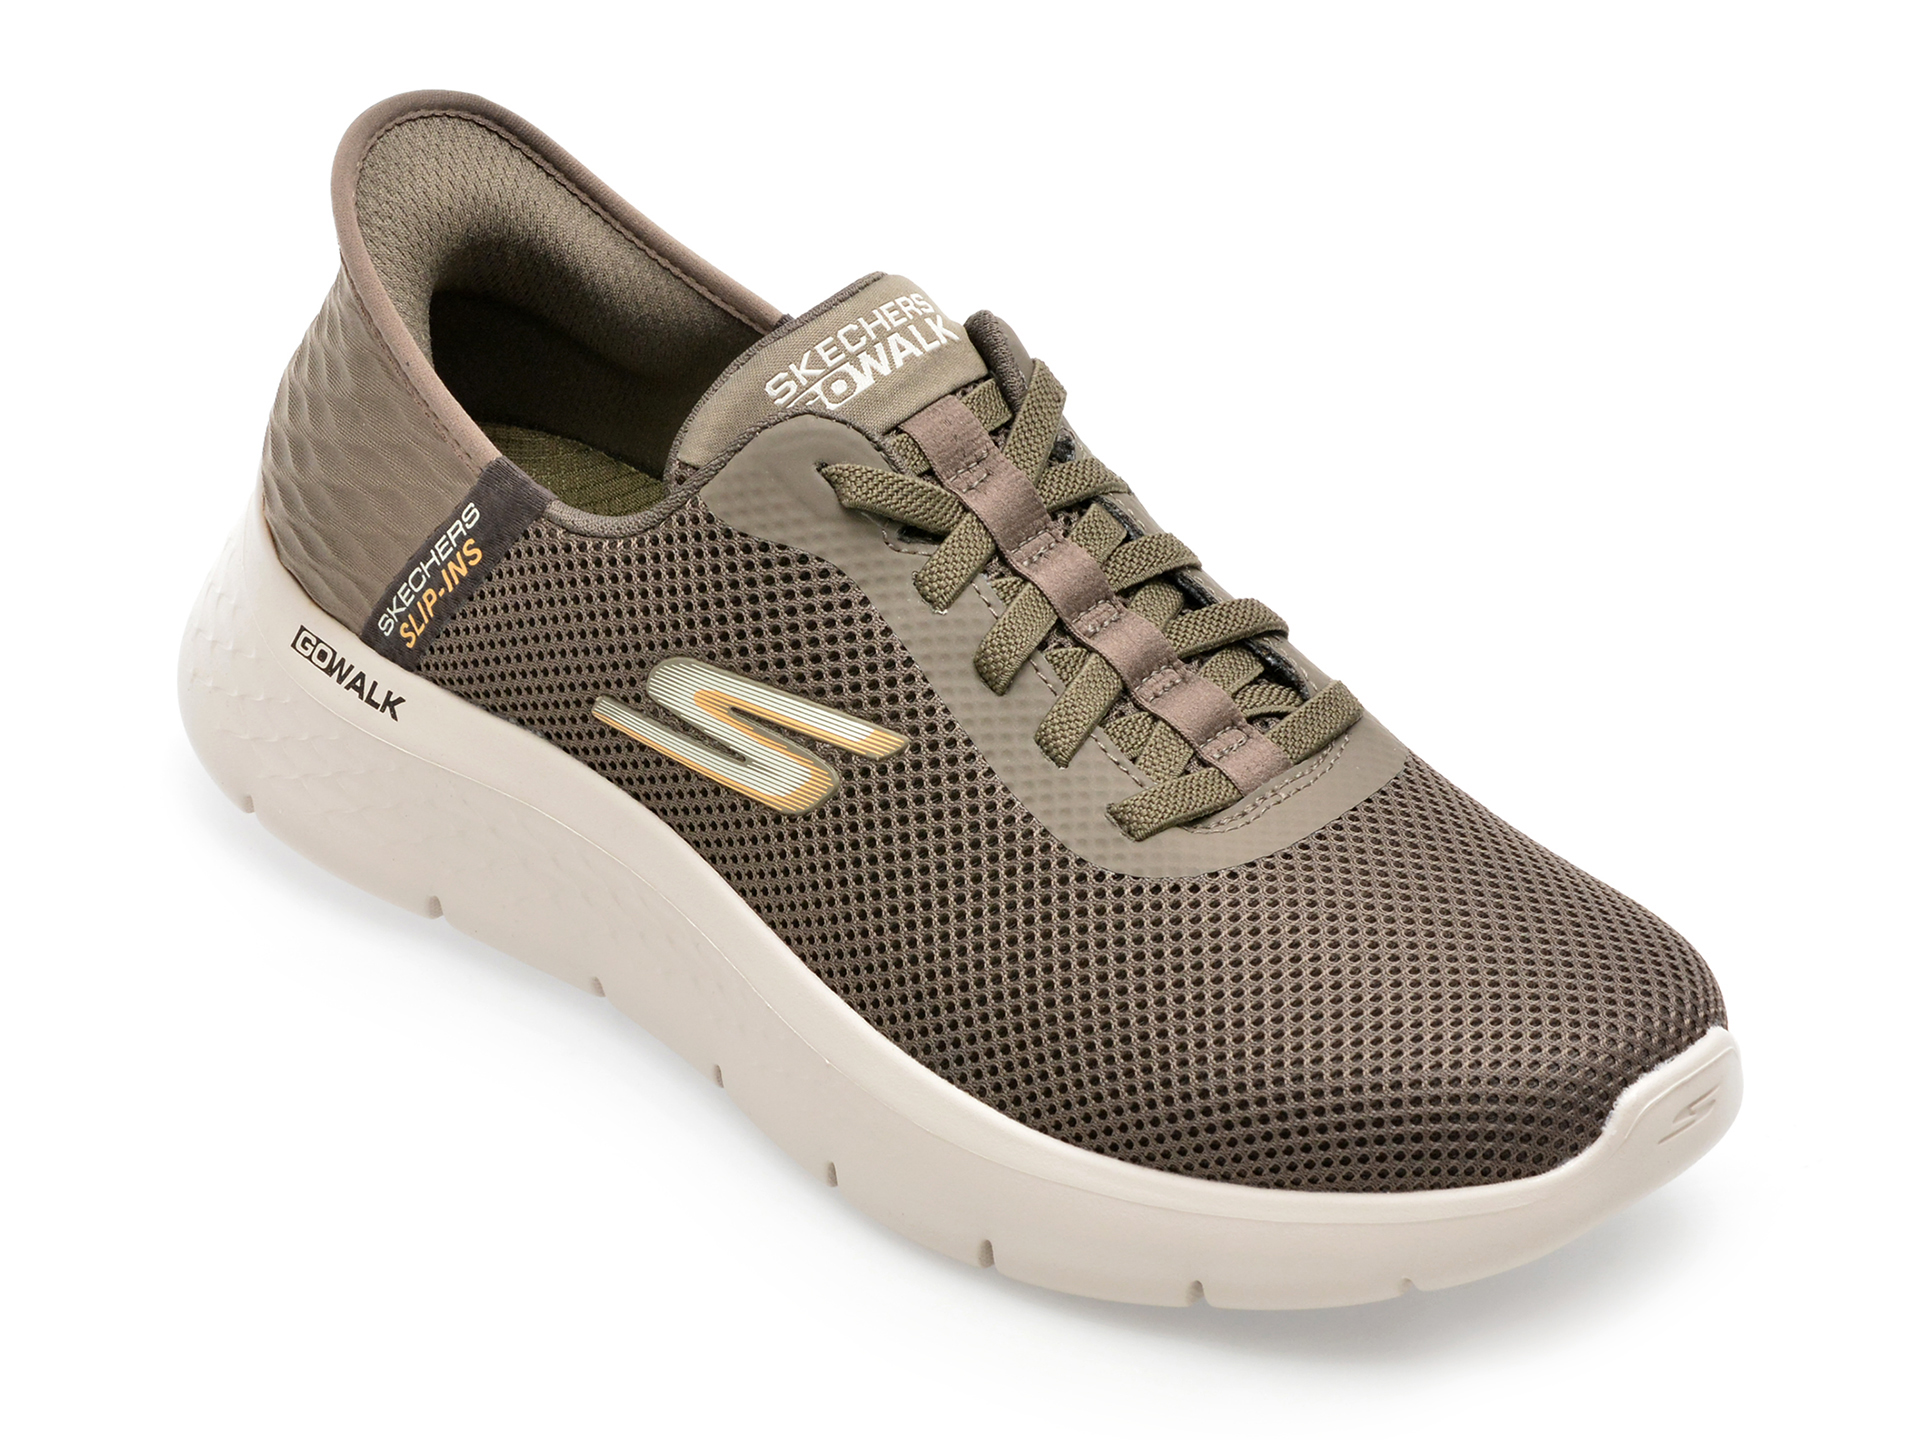 Pantofi SKECHERS maro, GO WALK FLEX, din material textil /barbati/pantofi